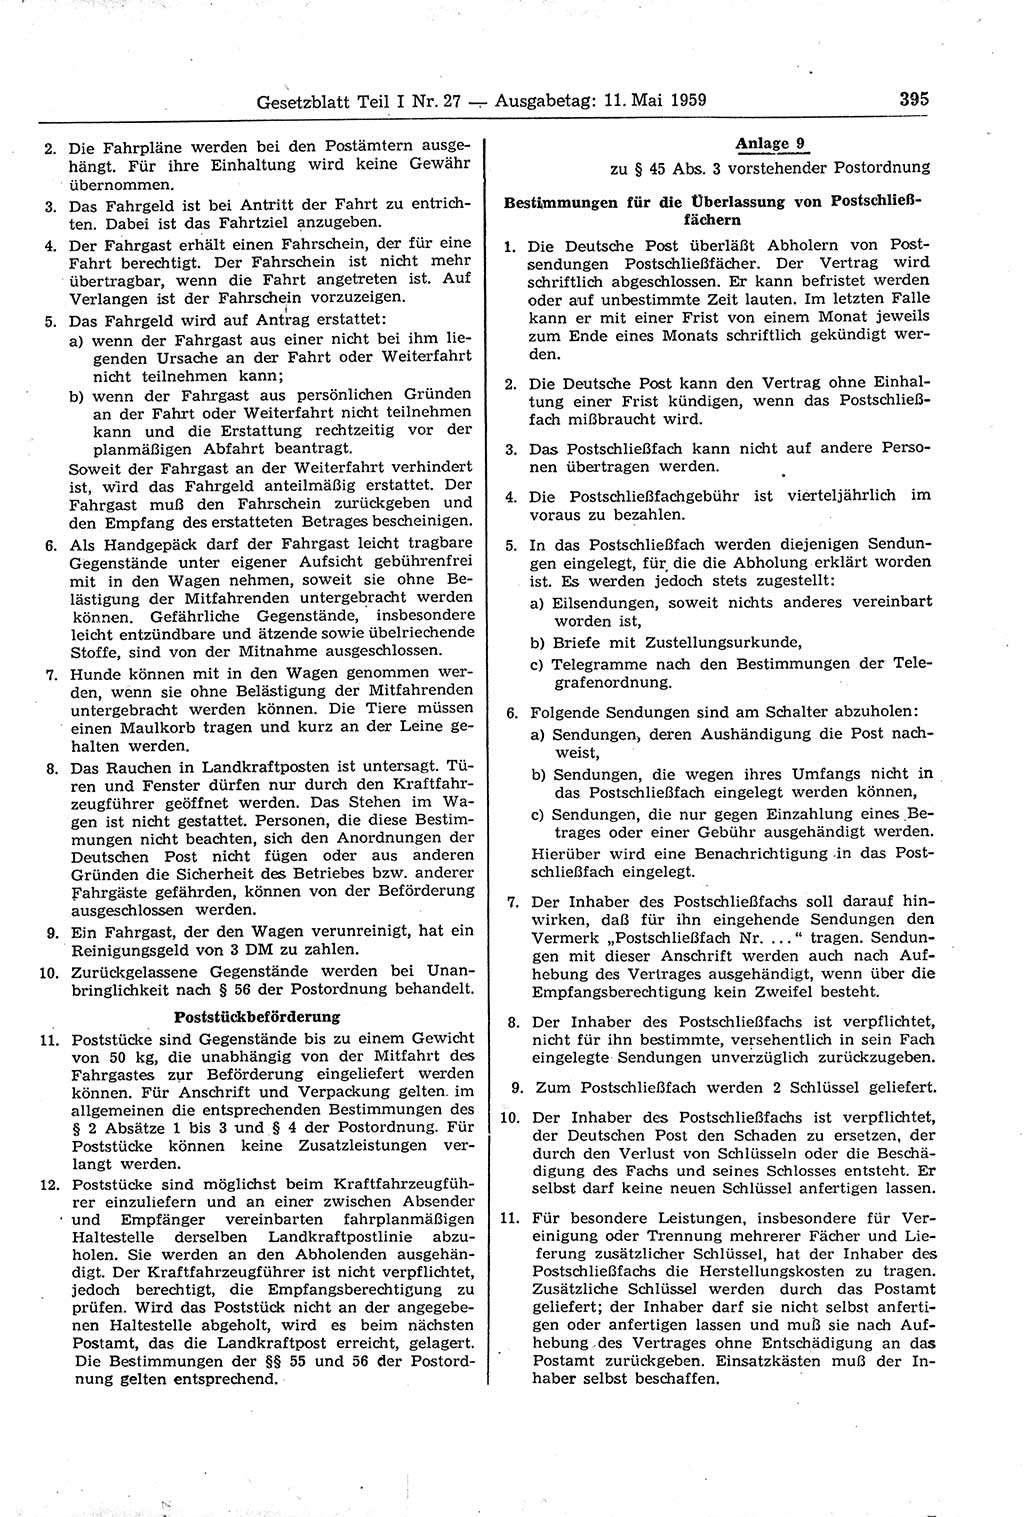 Gesetzblatt (GBl.) der Deutschen Demokratischen Republik (DDR) Teil Ⅰ 1959, Seite 395 (GBl. DDR Ⅰ 1959, S. 395)